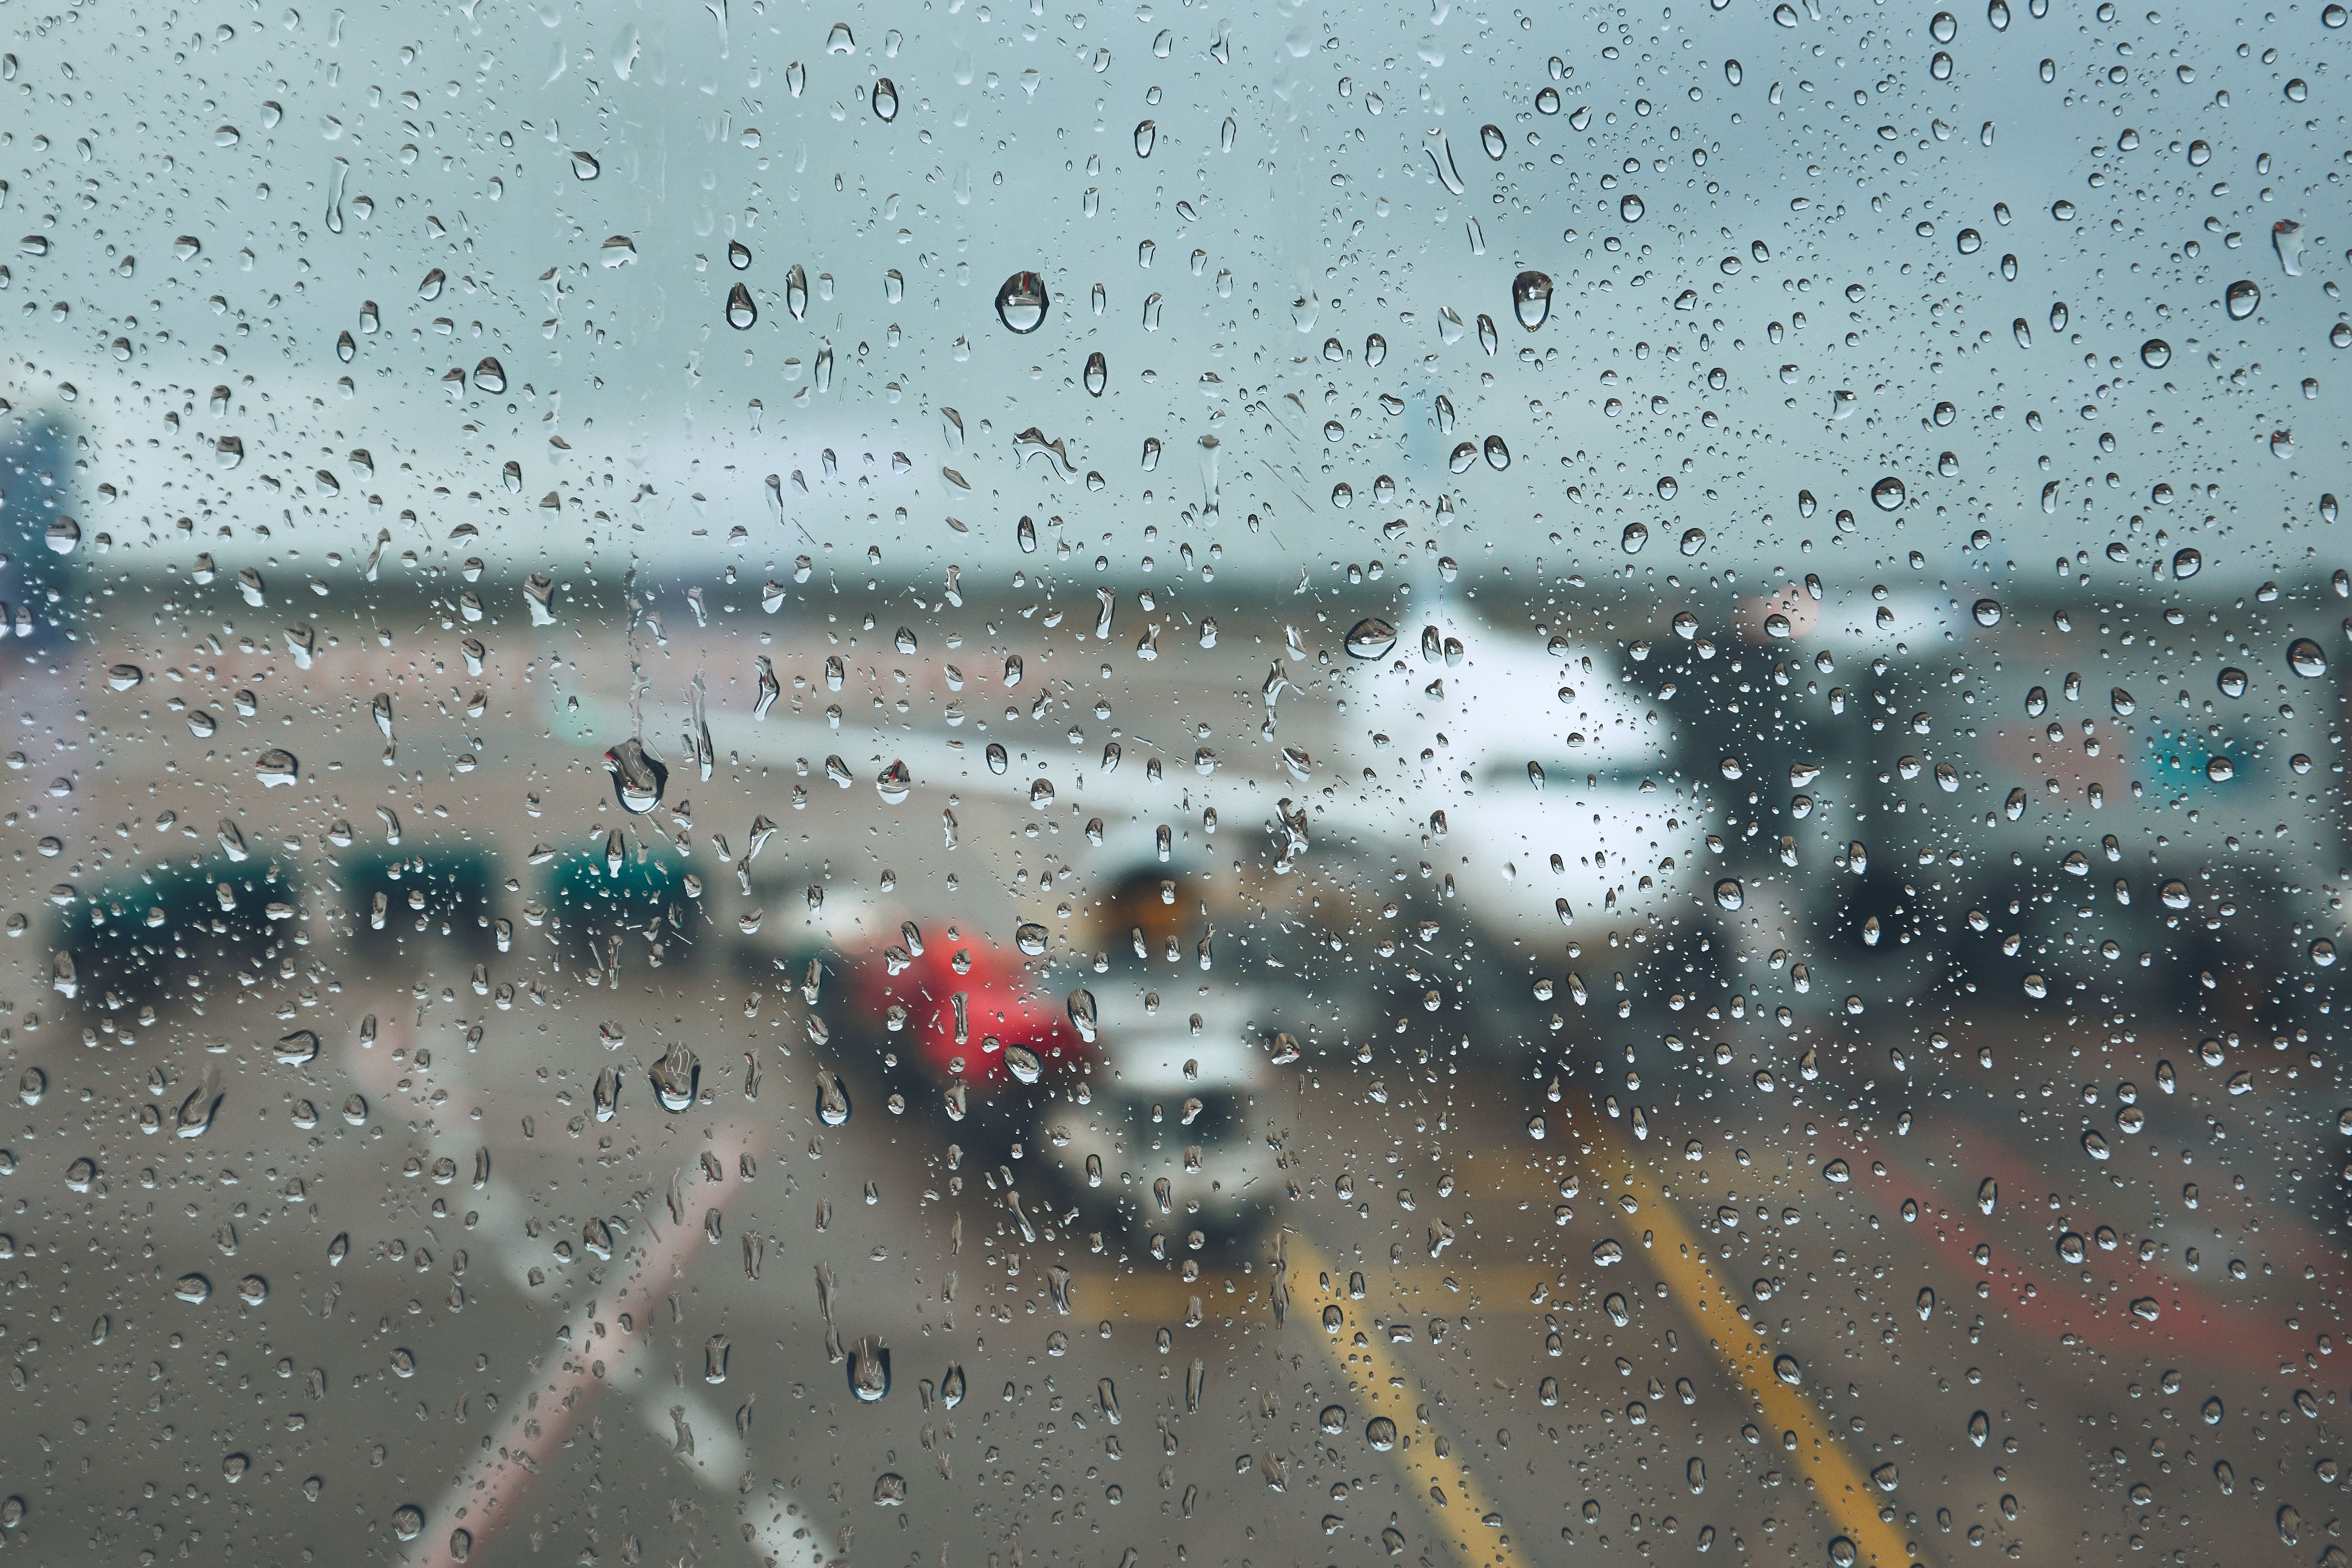 Aircraft in rain